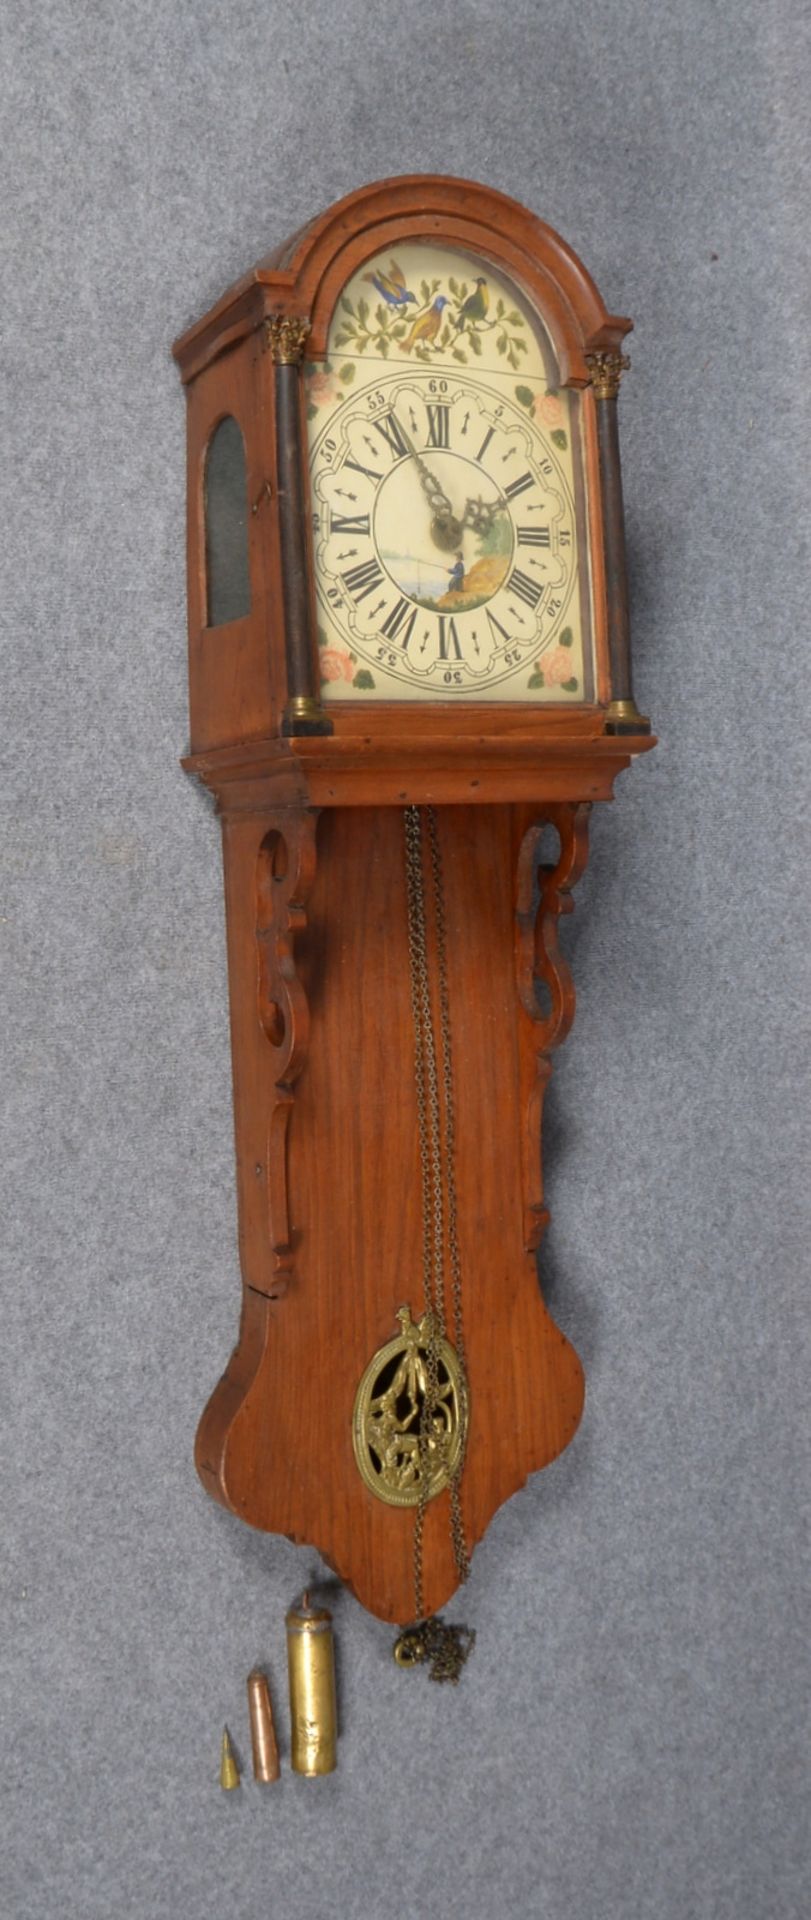 Halbkasten-Uhr, Ziffernblatt mit polychr. Malerei ('Angler am Ufer'), Uhr mit Weckfunktion